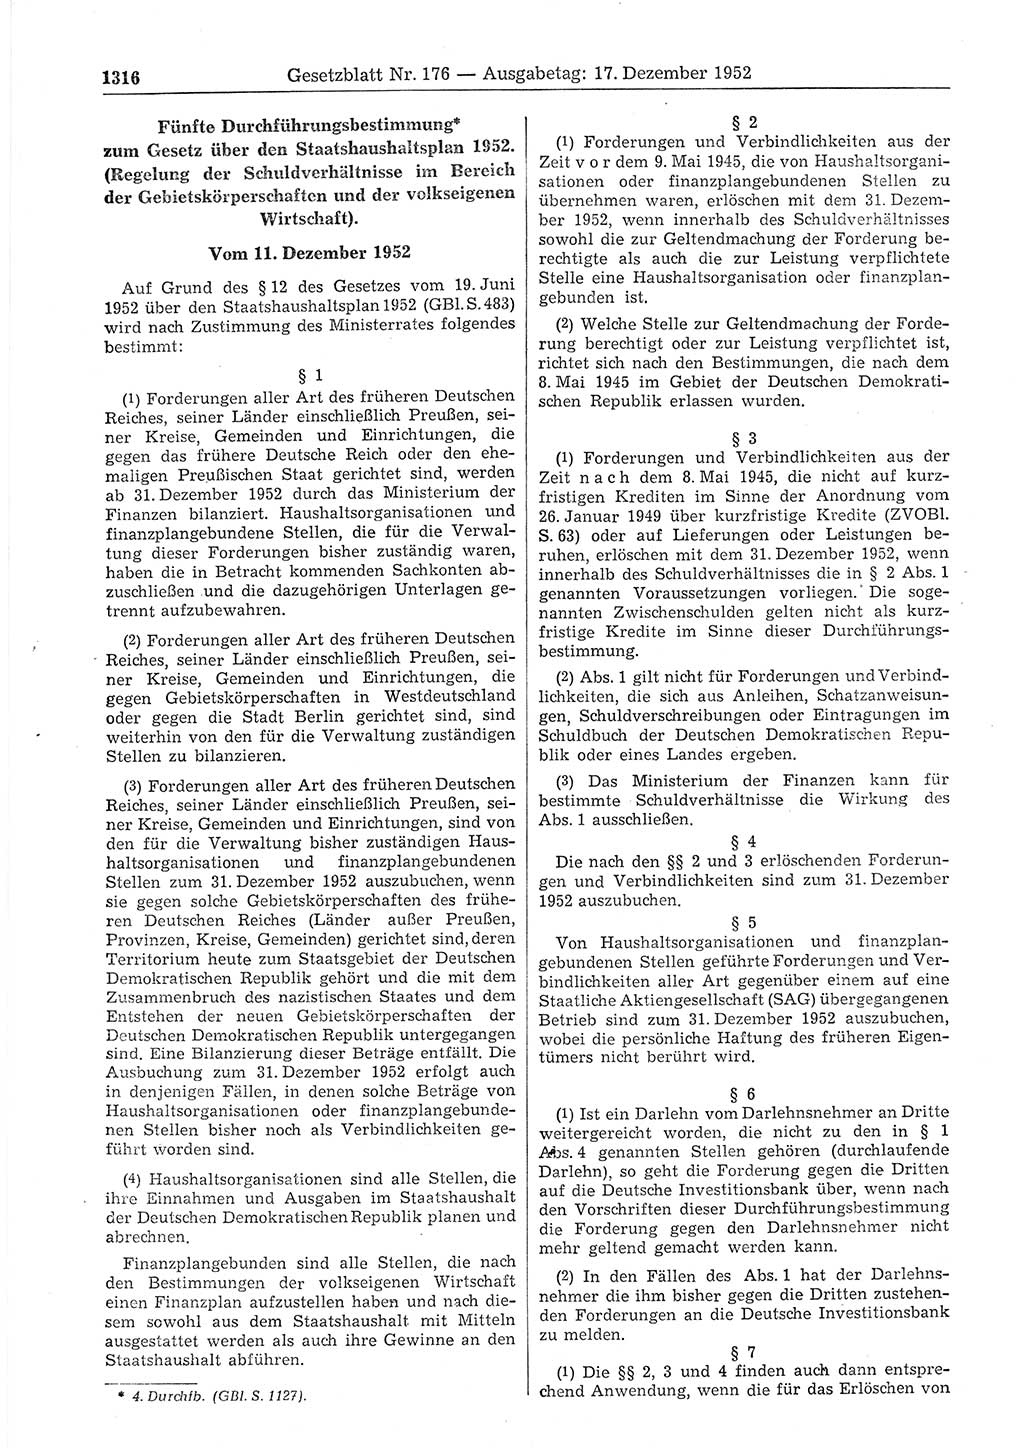 Gesetzblatt (GBl.) der Deutschen Demokratischen Republik (DDR) 1952, Seite 1316 (GBl. DDR 1952, S. 1316)